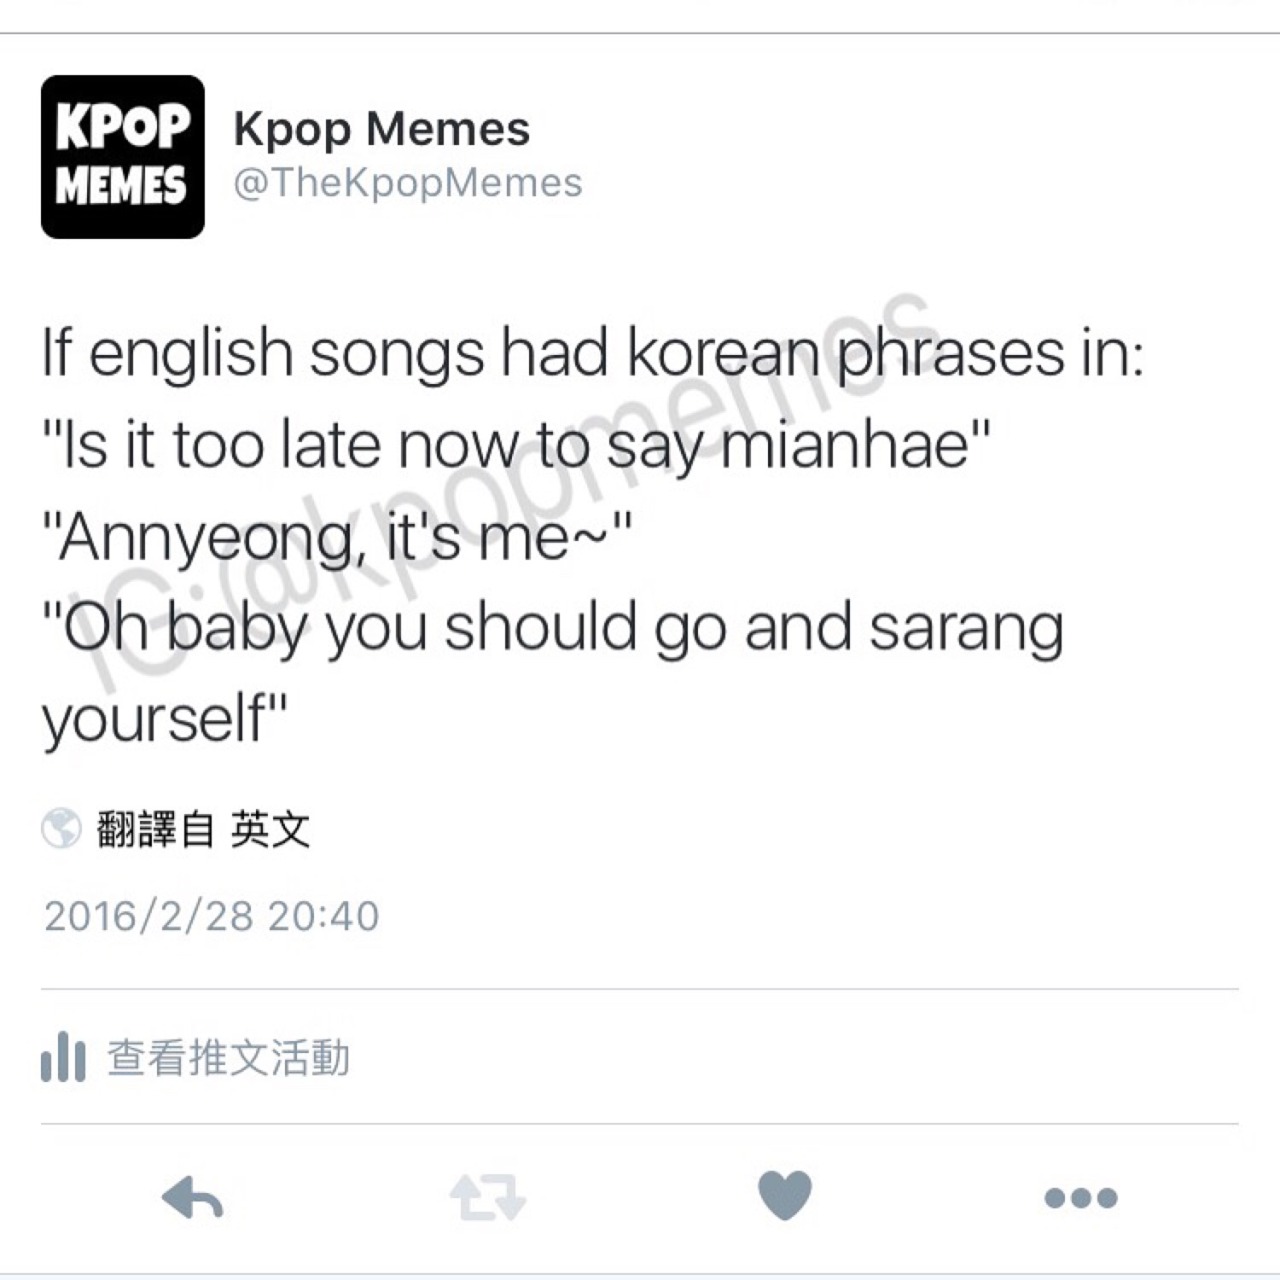 Kpop Memes